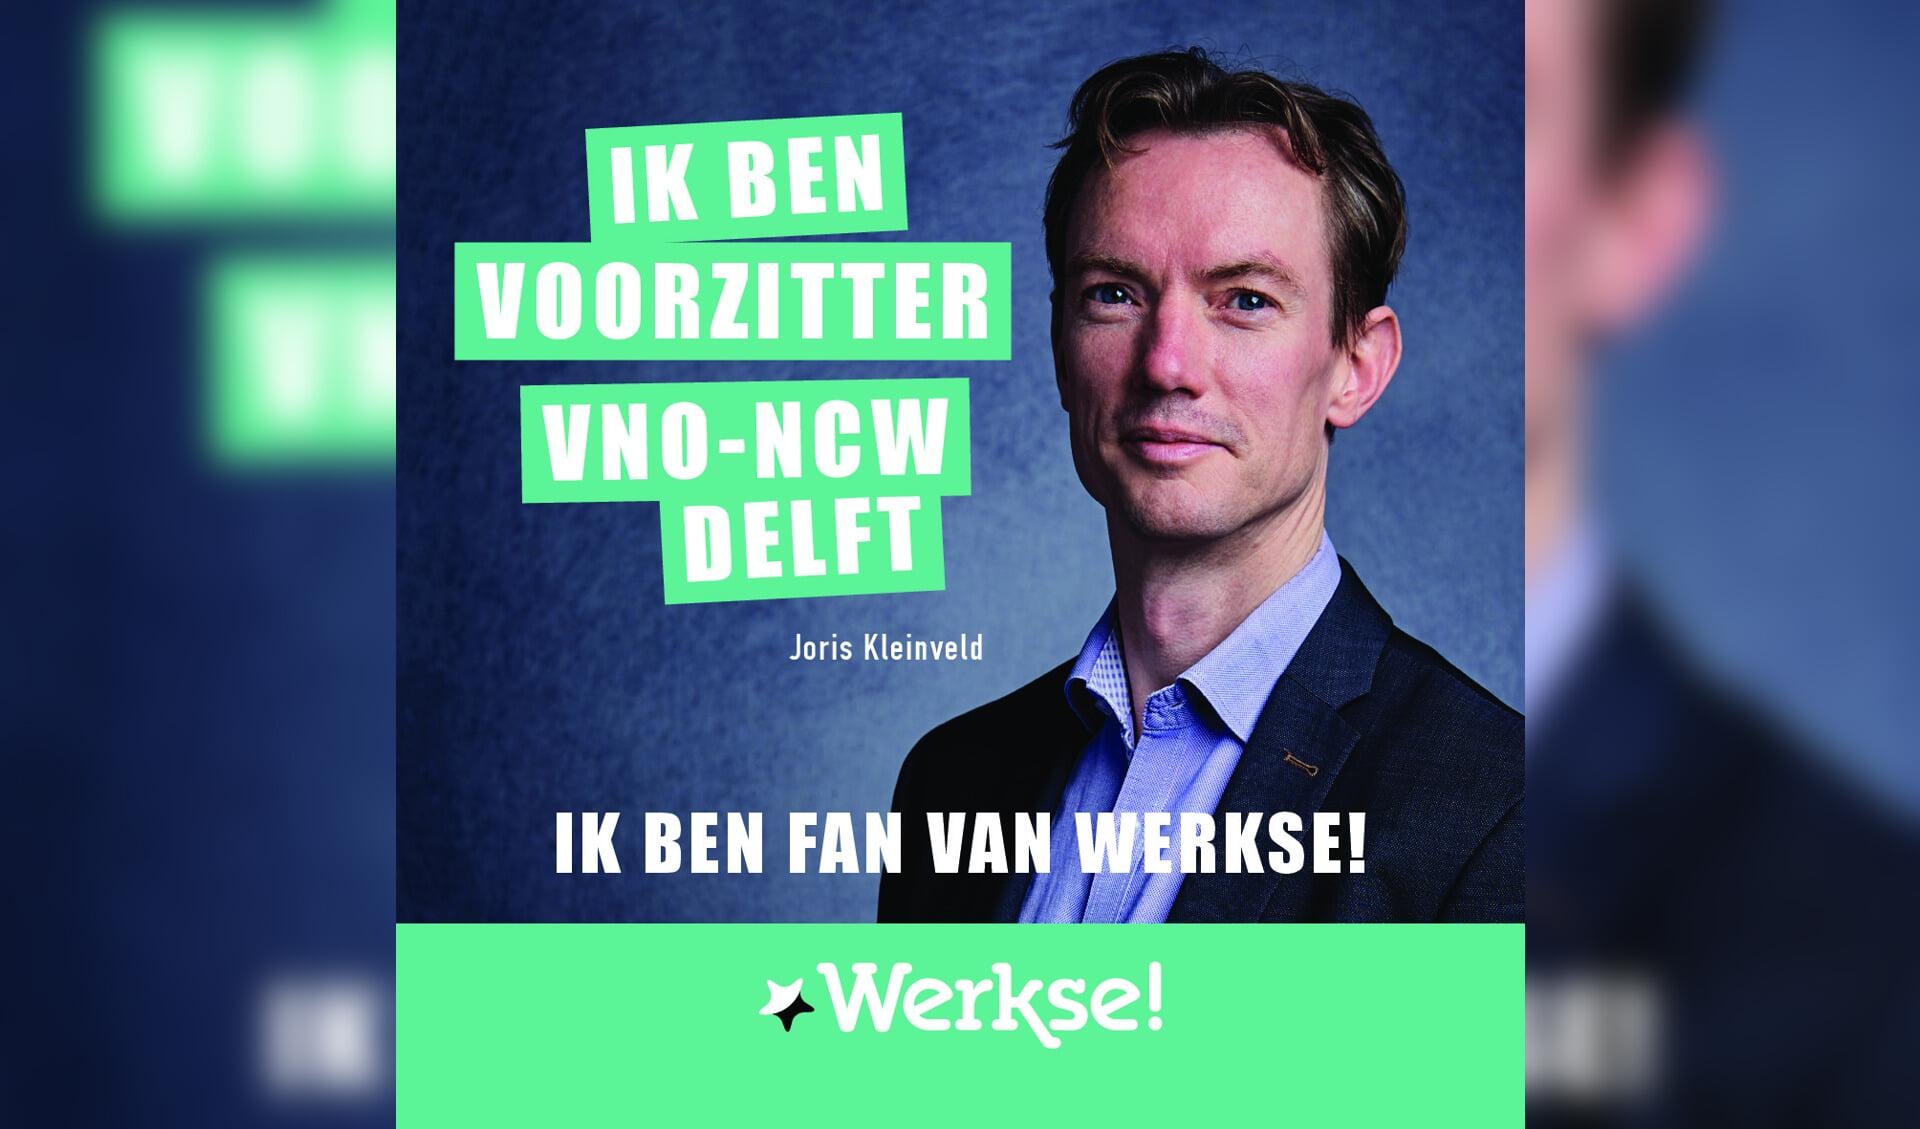 Joris Kleinveld hoopt in 2018 een mooie samenwerking met Werkse! aan te gaan, maar was ook vorig jaar al fan van Werkse!